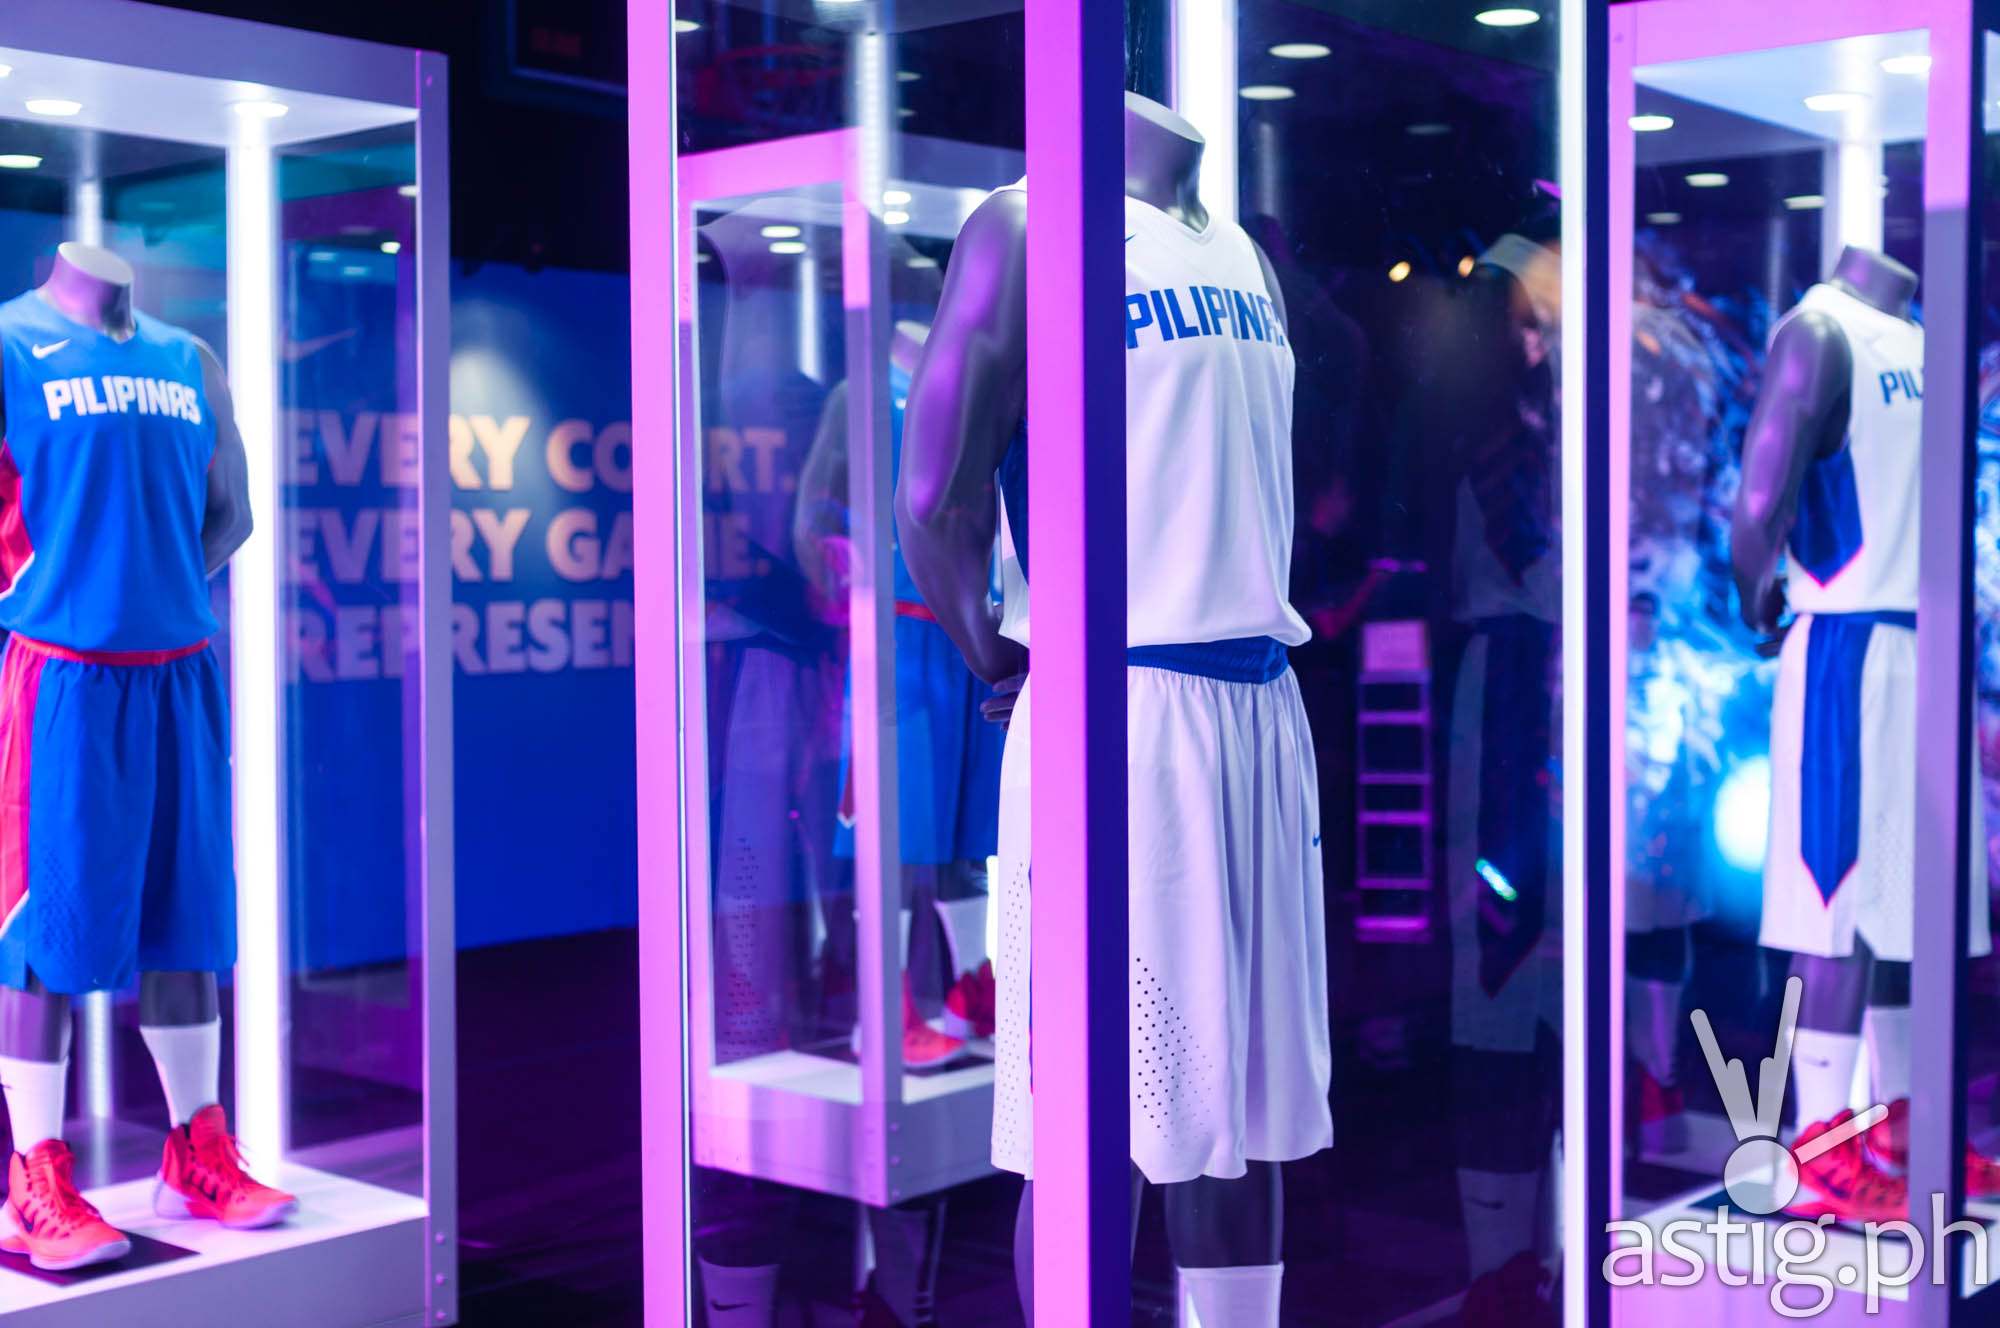 Gilas Pilipinas 2014 FIBA uniform by Nike